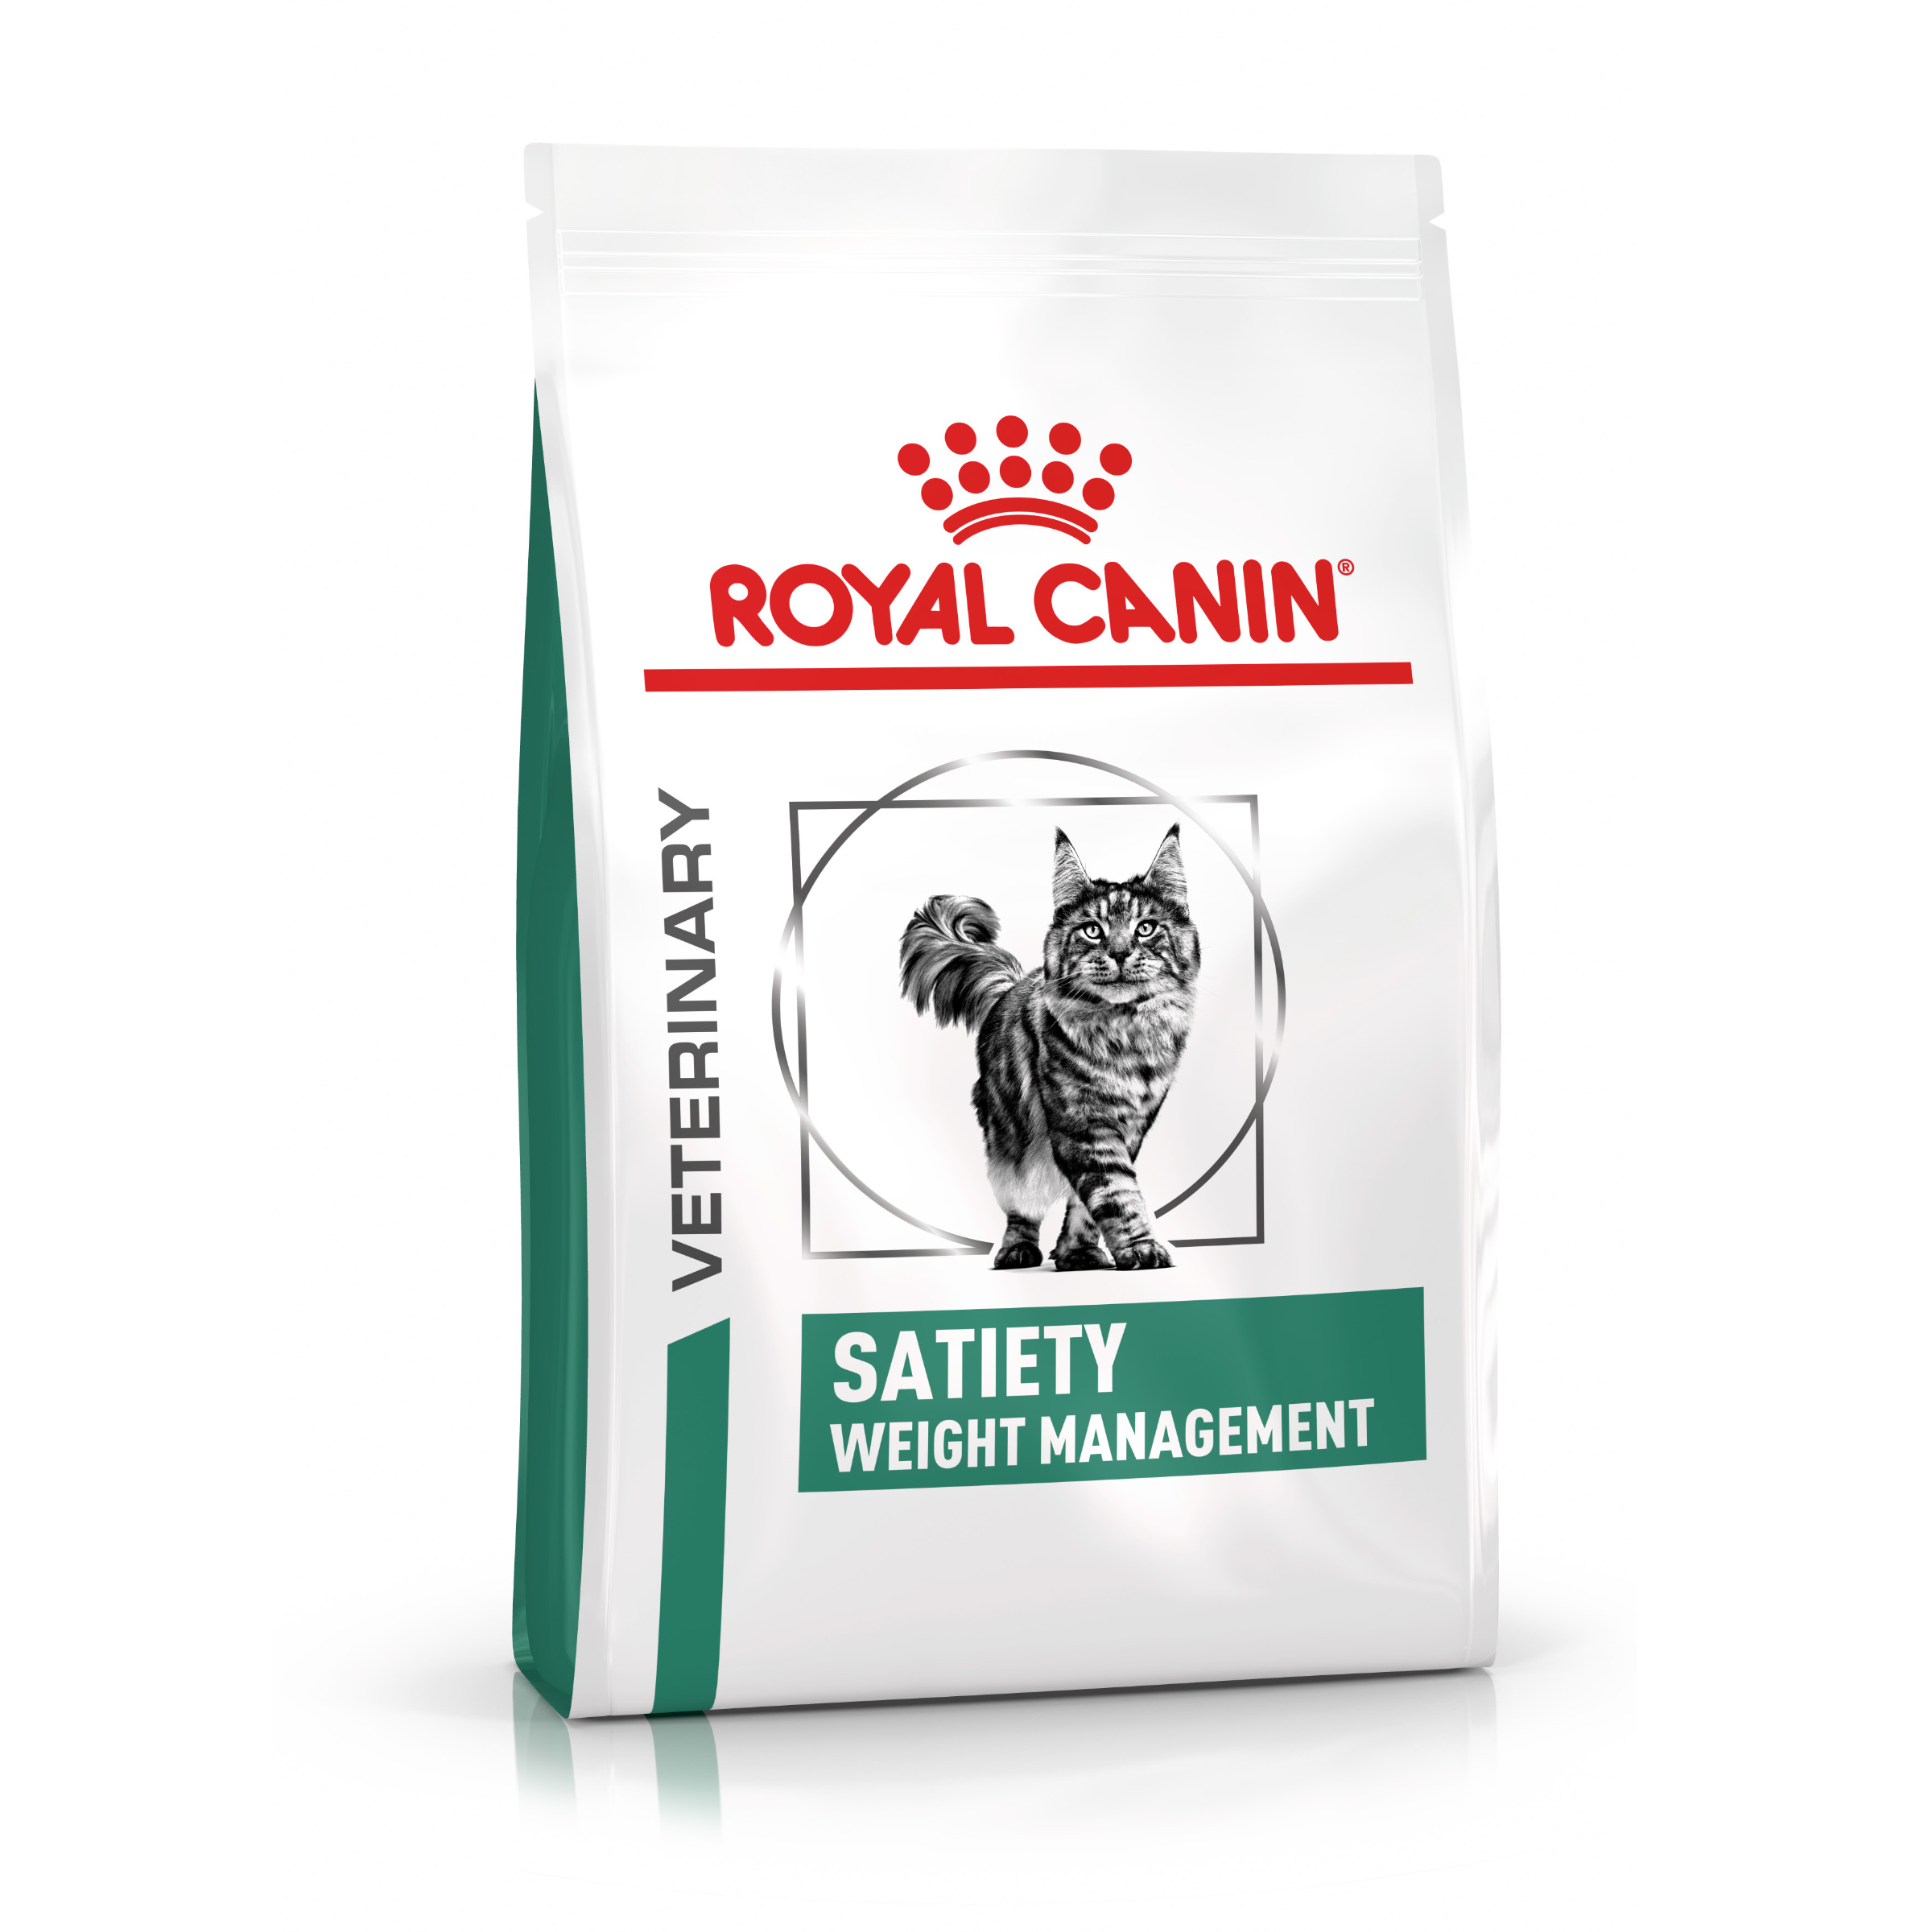 ROYAL CANIN Veterinary SATIETY WEIGHT MANAGEMENT Trockenfutter für Katzen 6 kg 